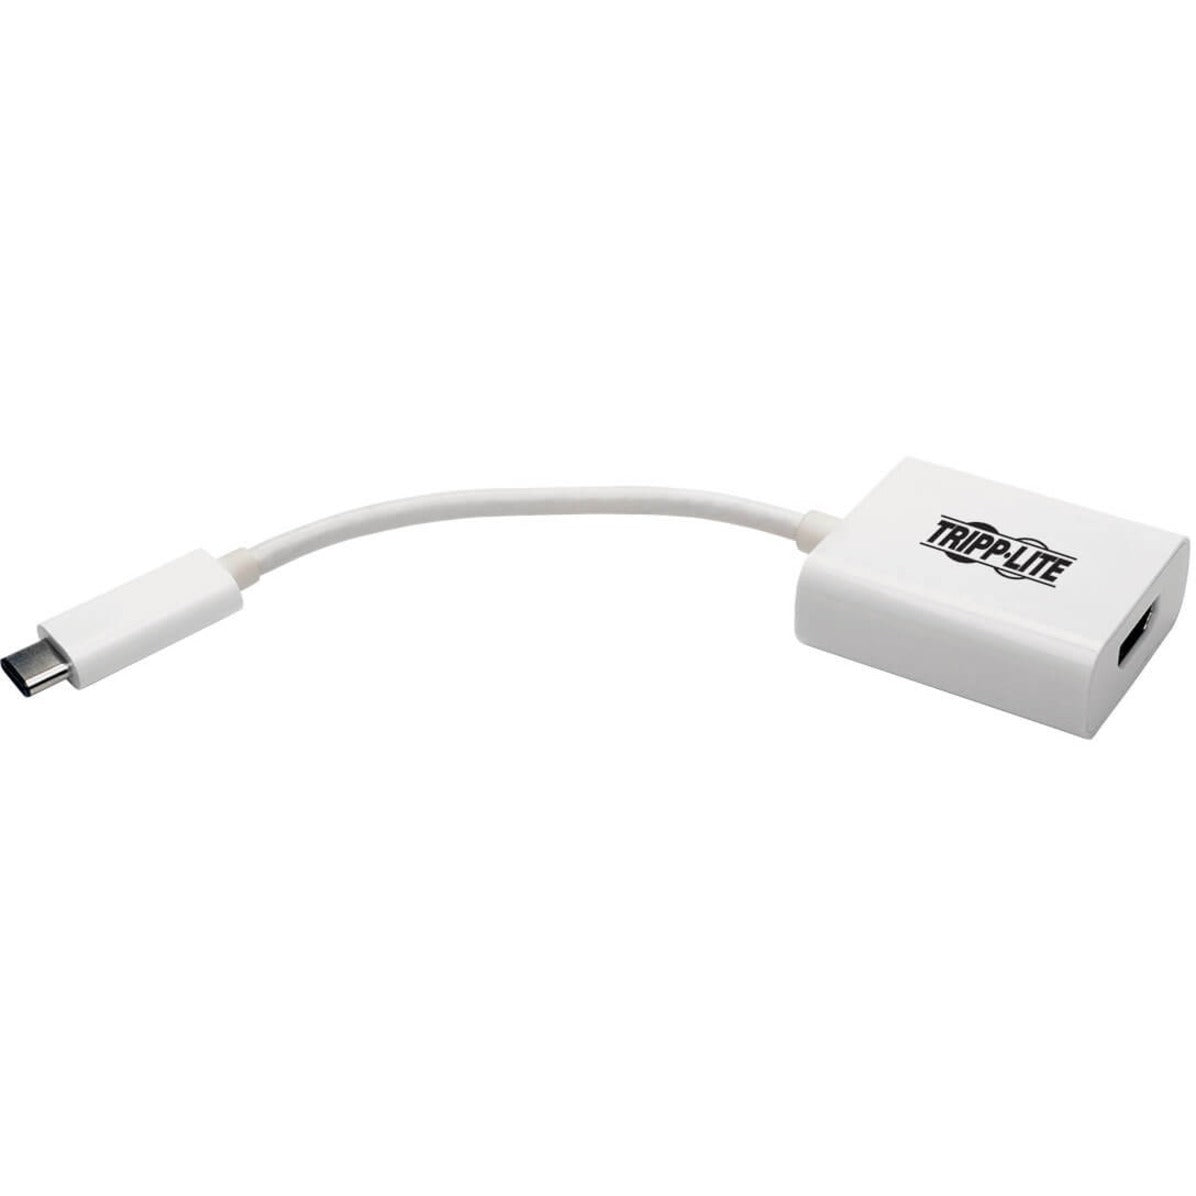 Tripp Lite U444-06N-HD-AM USB 3.1 Gen 1 a HDMI Modo Alternativo Adaptador de Tarjeta de Gráficos de Video Externo Dual/Multi-Monitor Admite 2 Monitores. Marca: Tripp Lite. Traducir marca: Tripp Lite es Tripp Lite.